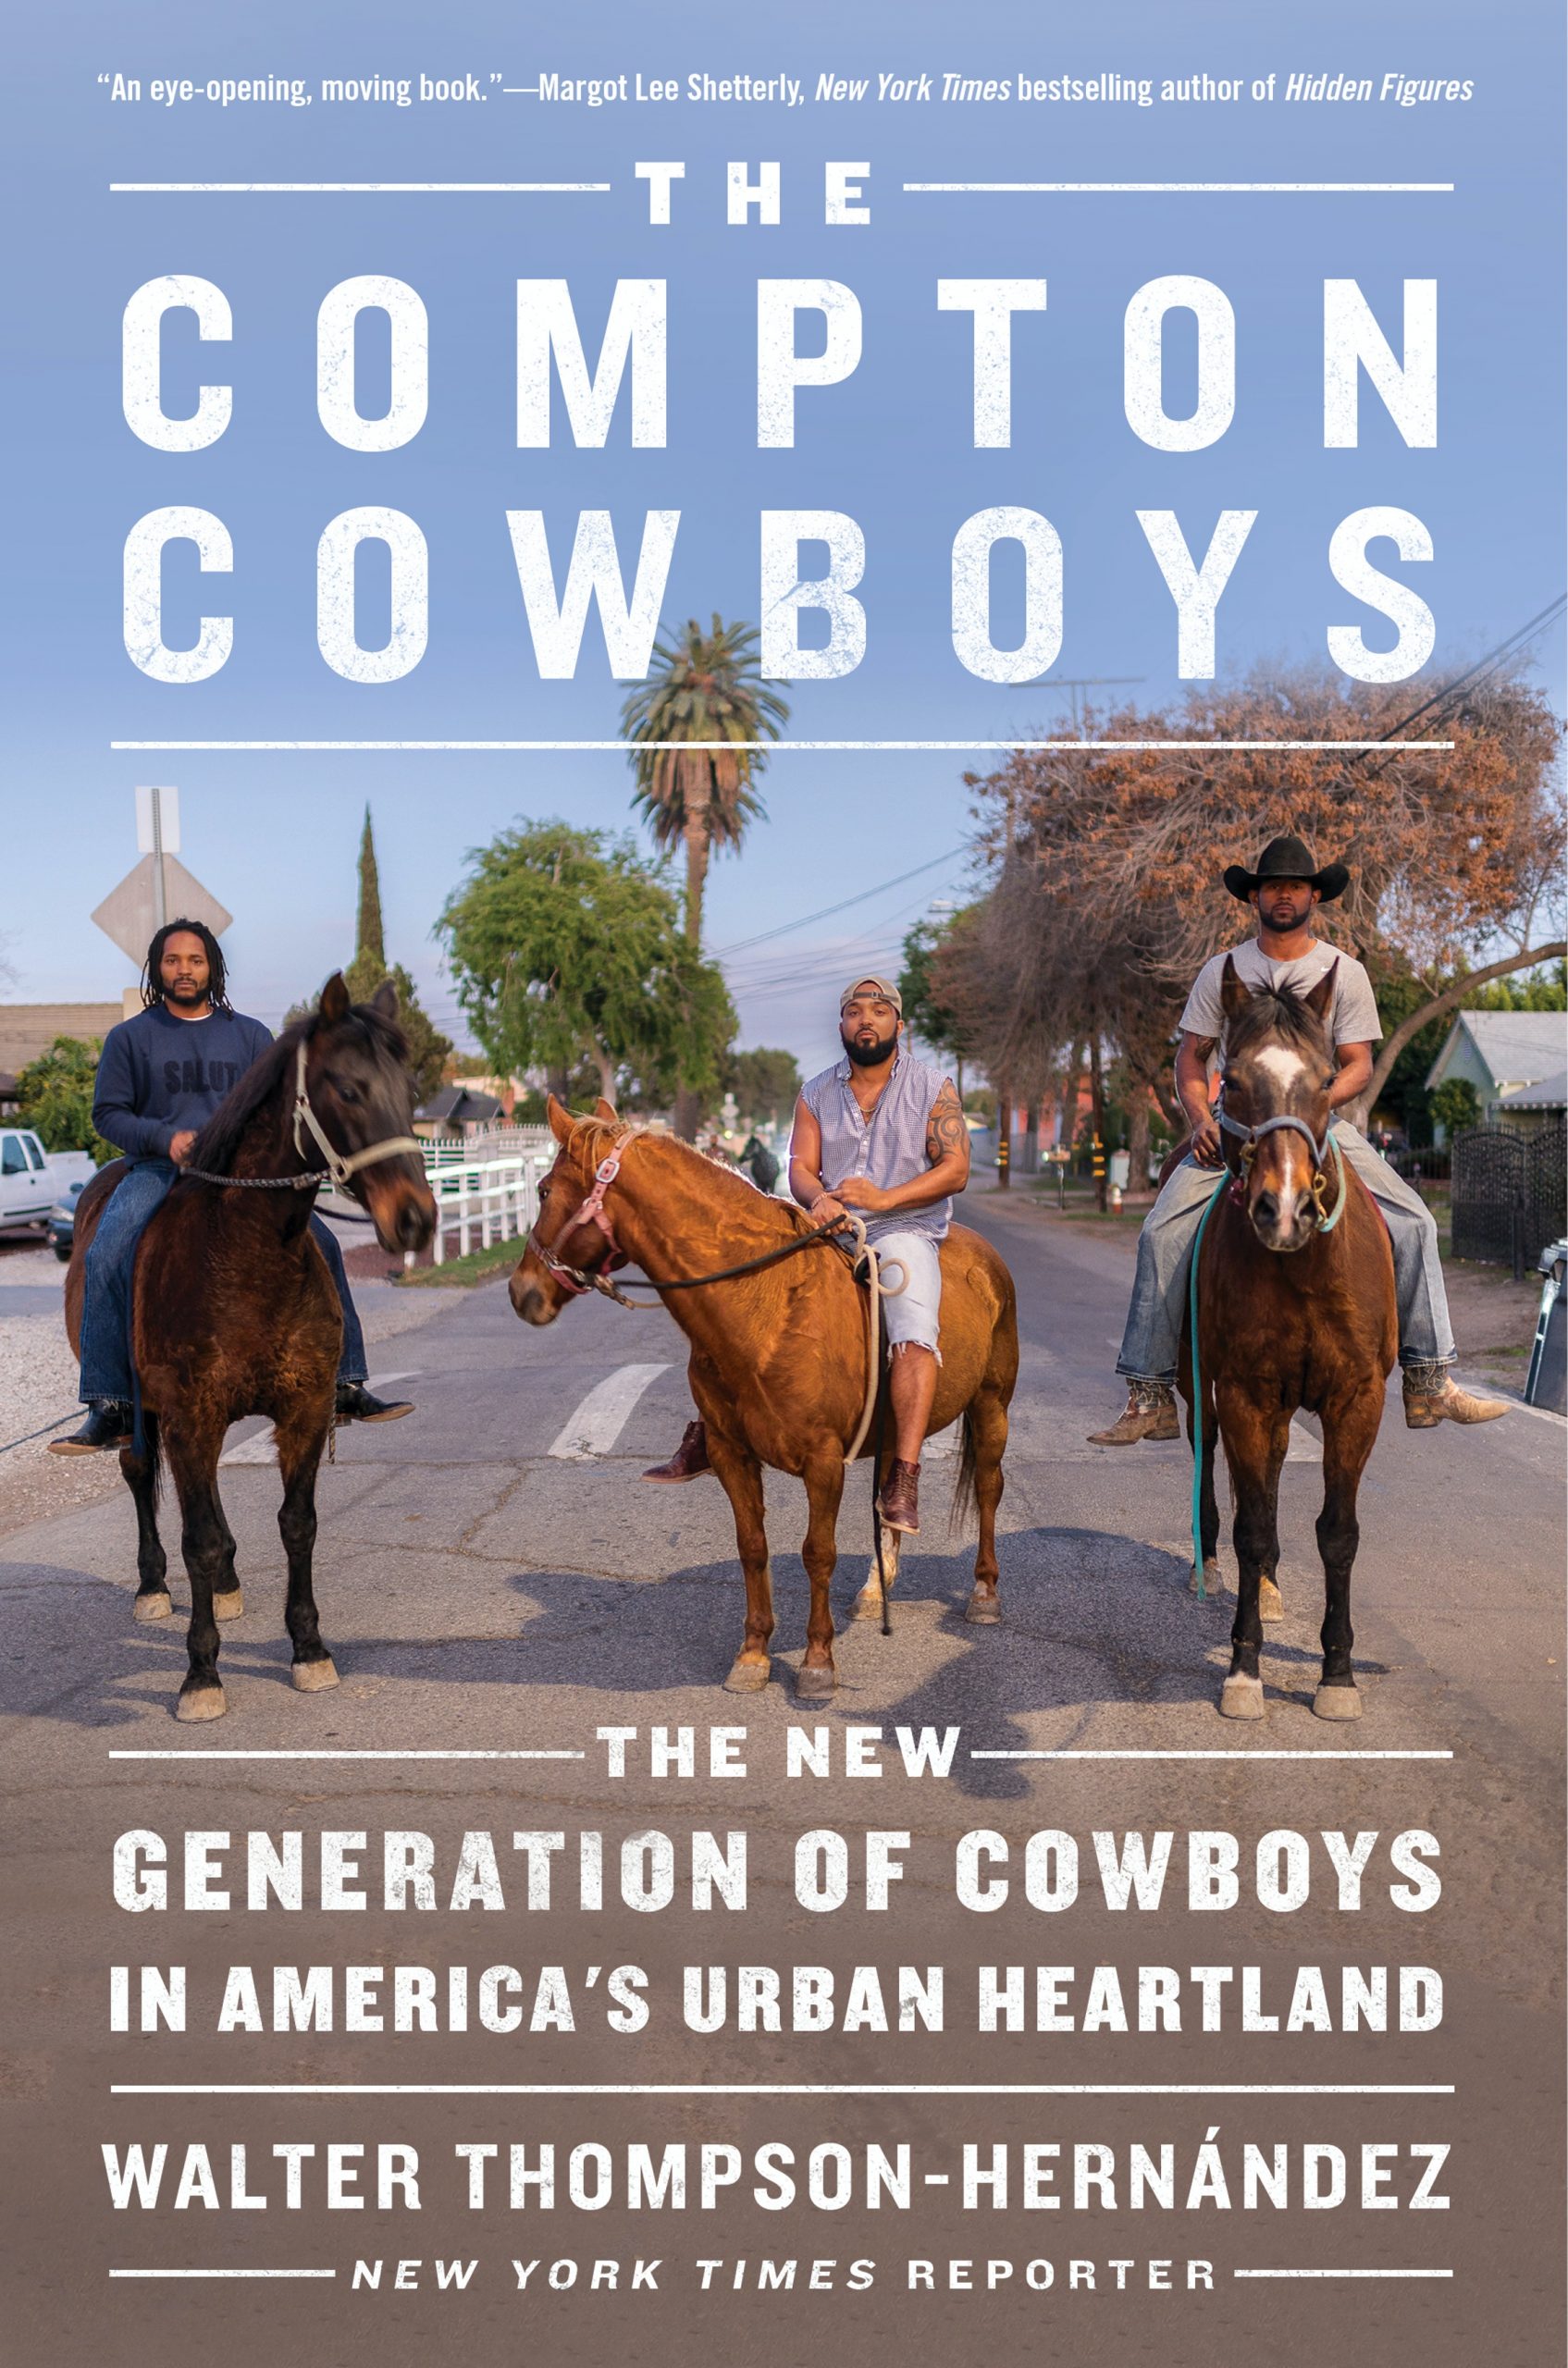 Arte de portada de Compton Cowboys: La nueva generación de vaqueros en el corazón urbano de Estados Unidos por Walter Thompson-Hernández.